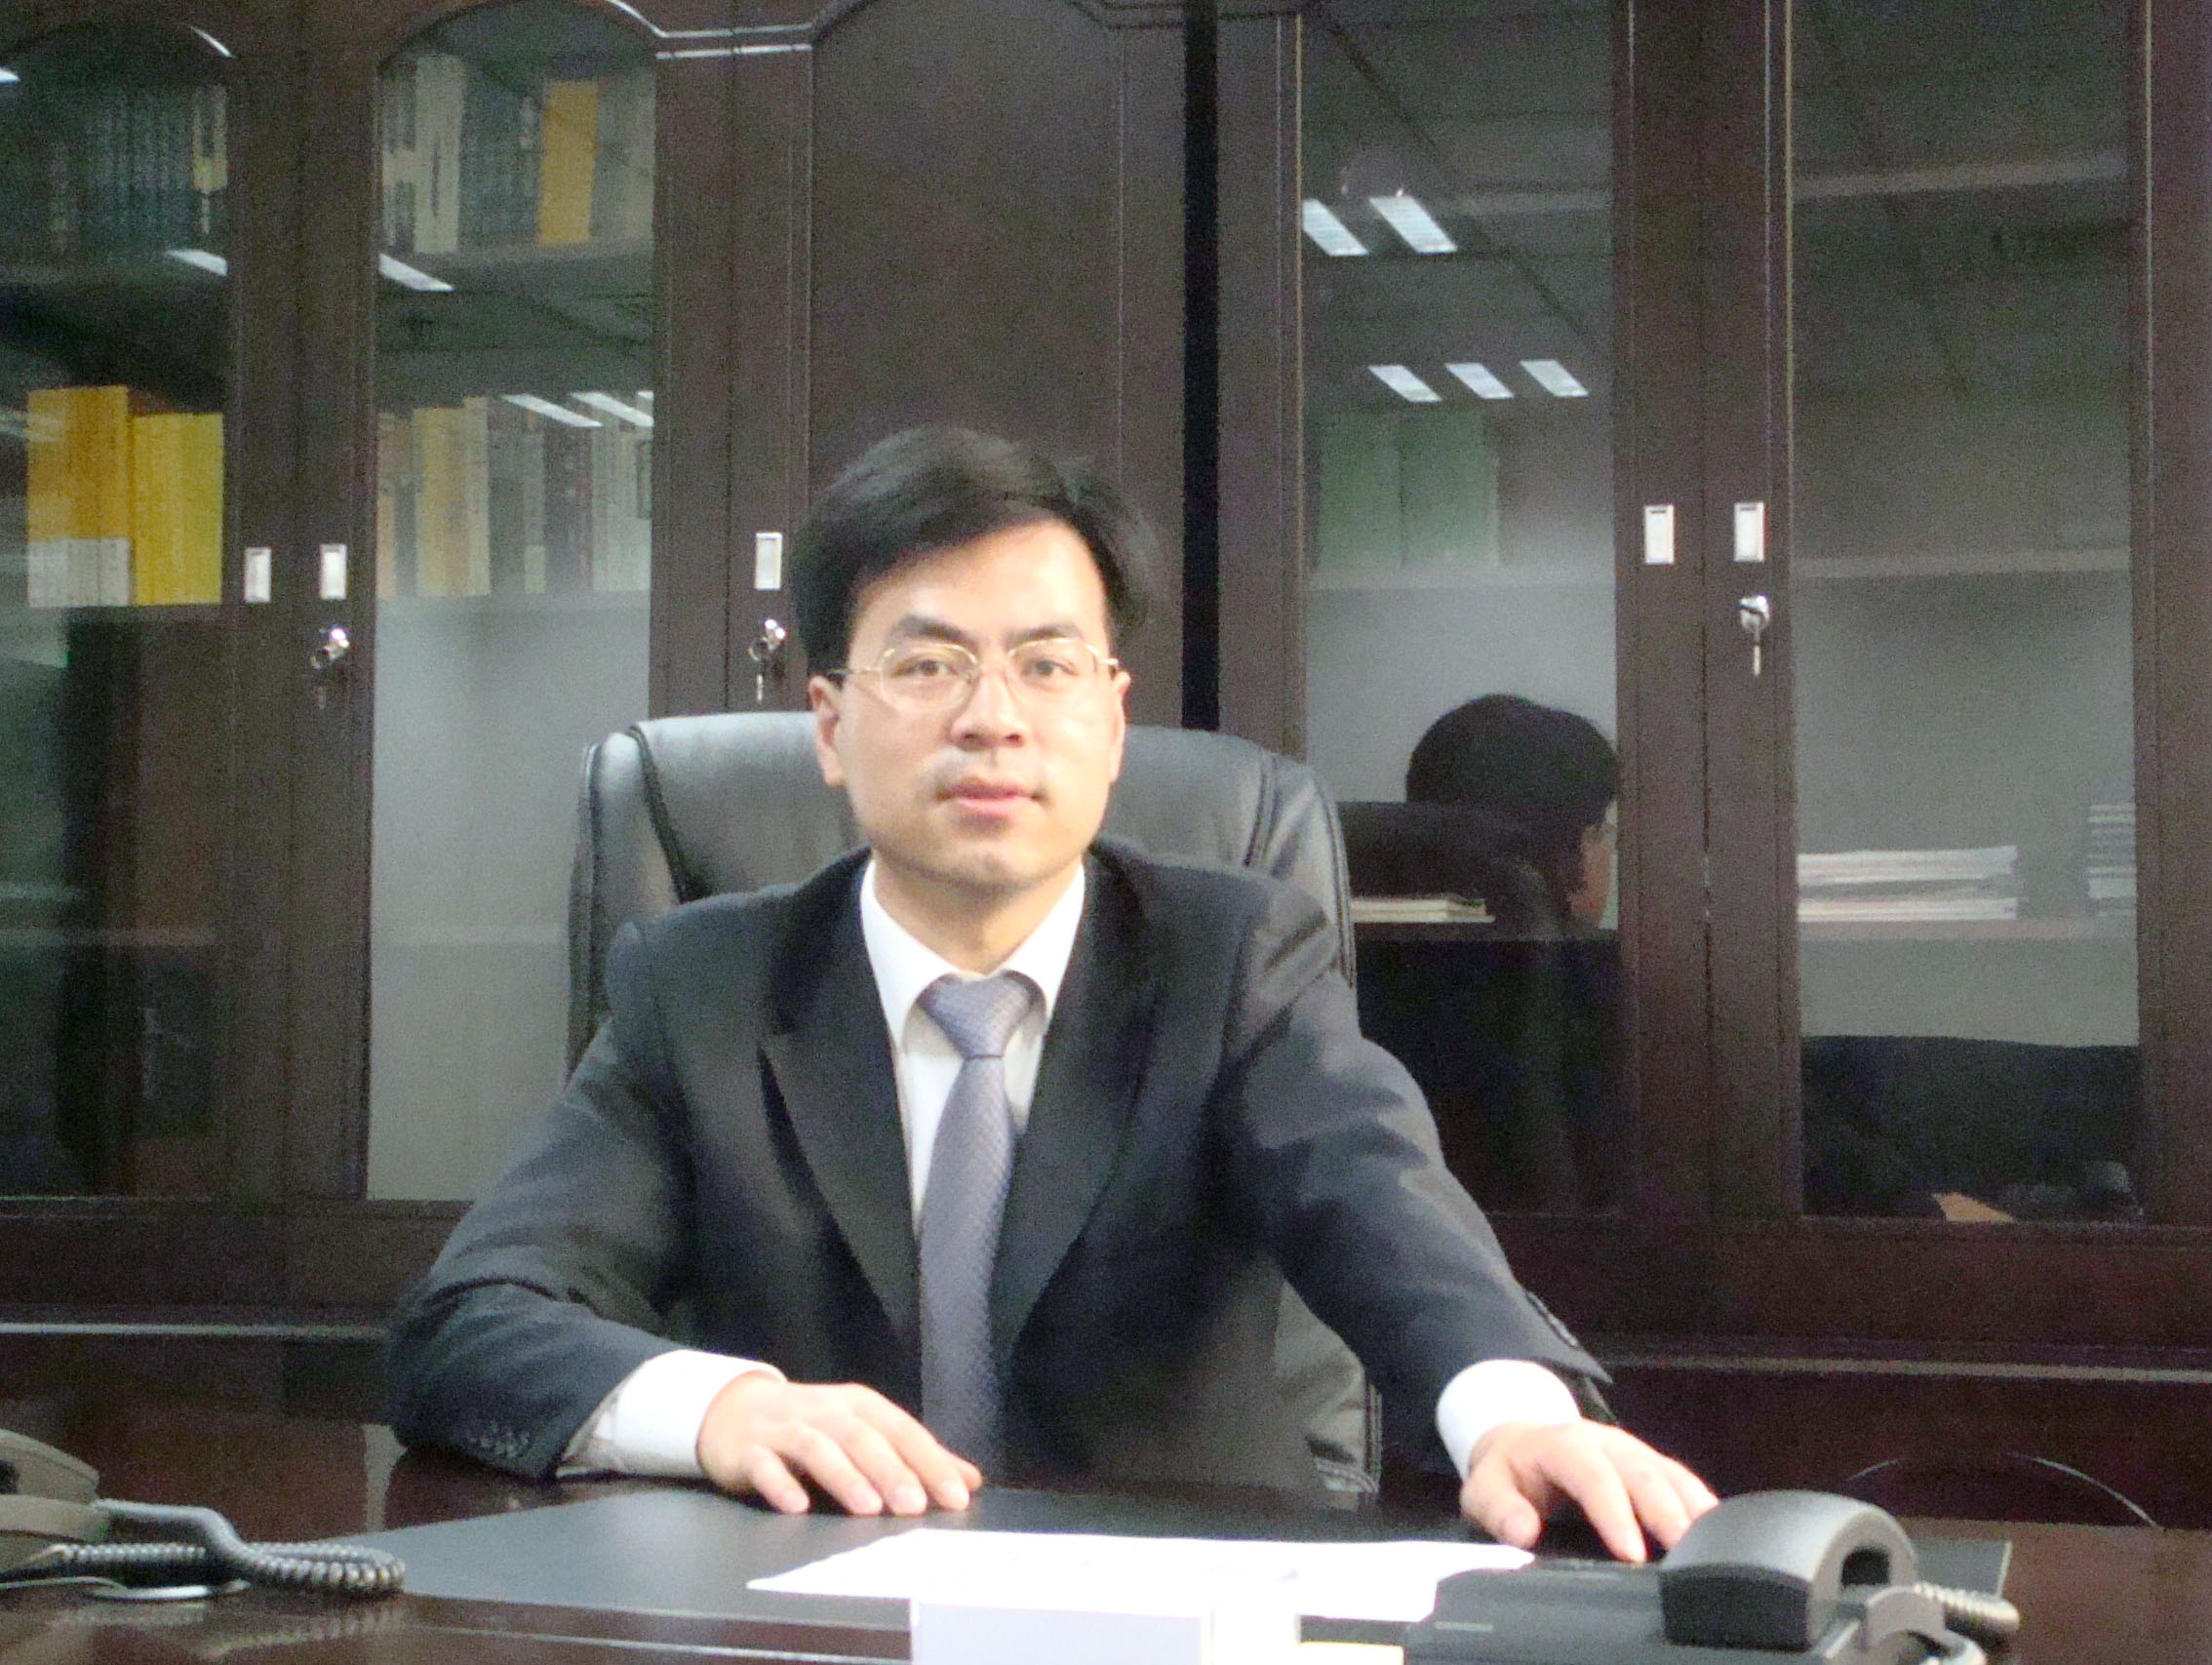 中国互联网金融行业协会高级金融分析师潘小军